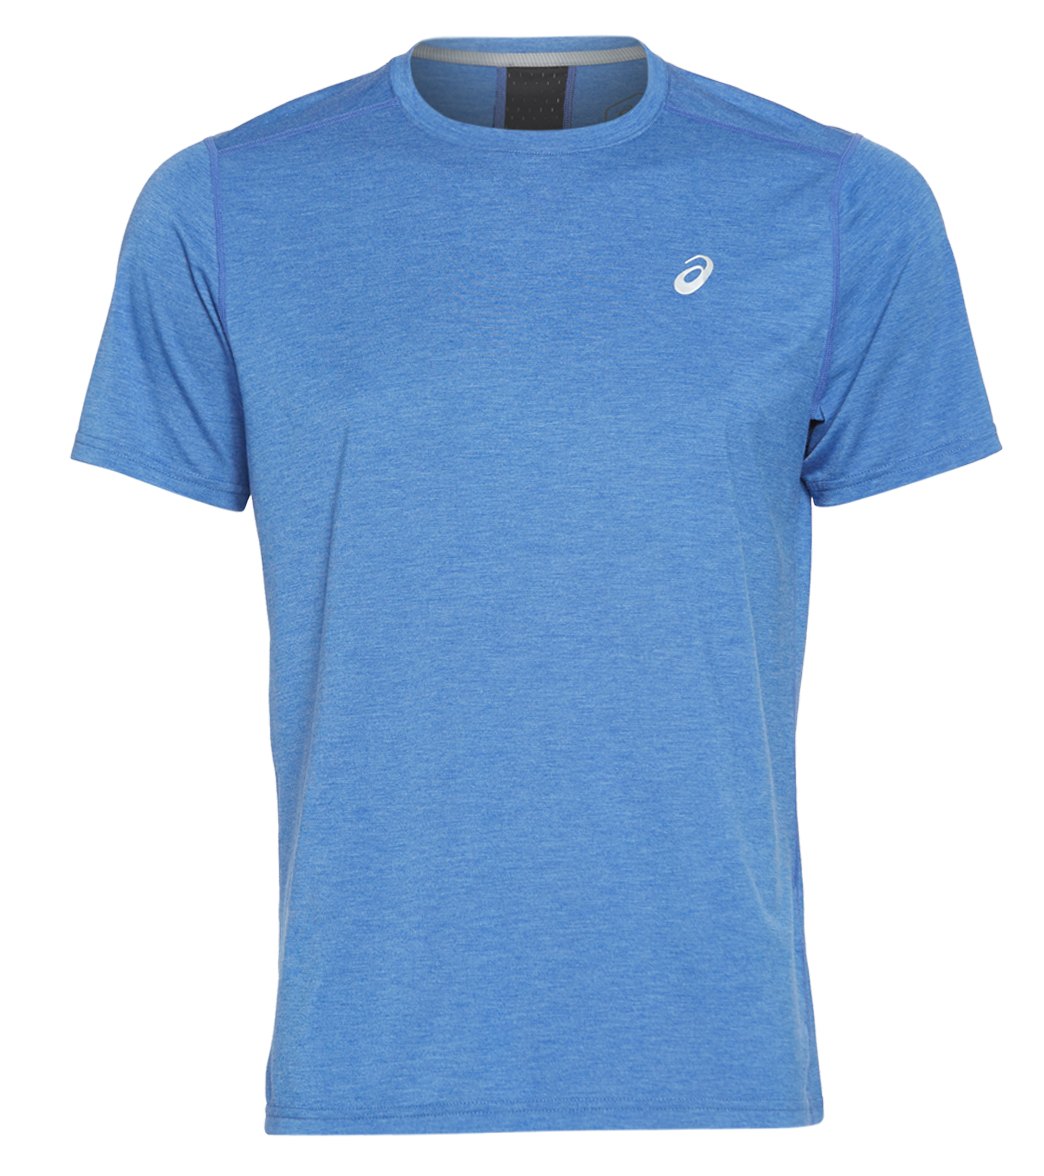 Men's Short Sleeve Shirtperformance Run Top - Blue Small Asics Size Small - Swimoutlet.com